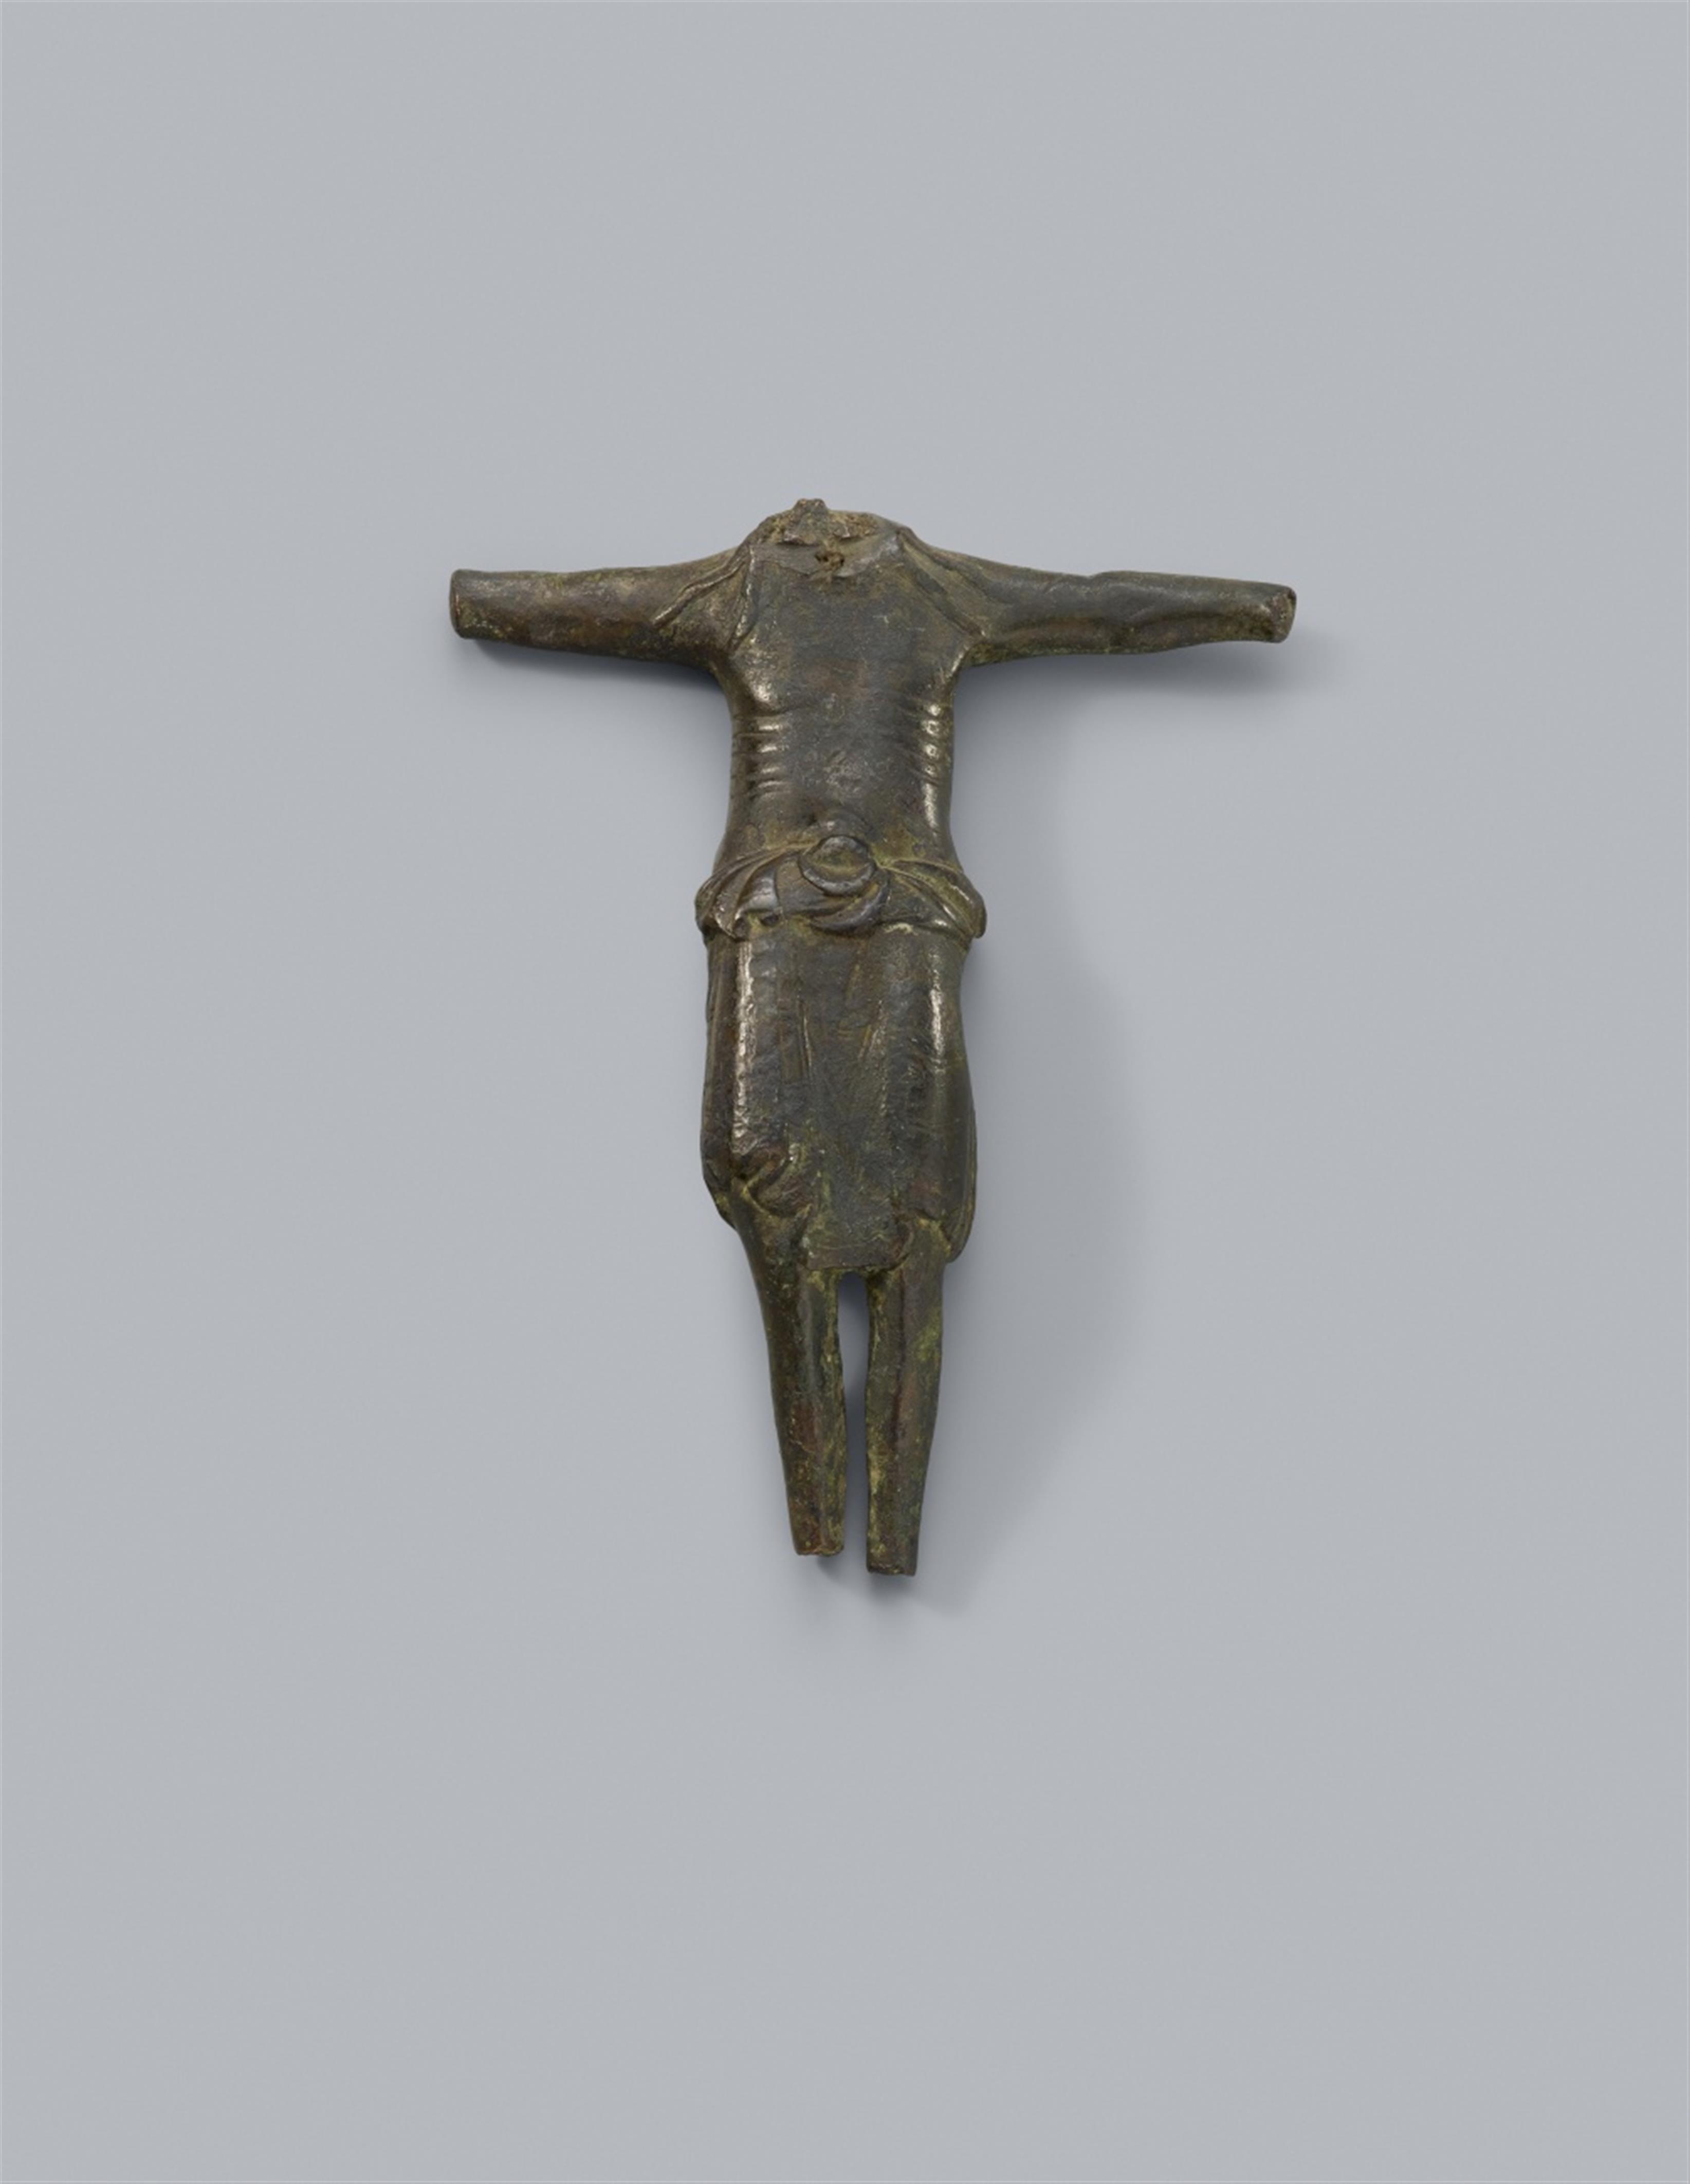 Wohl Maasland 1. Hälfte 13. Jahrhundert - Corpus Christi - image-1